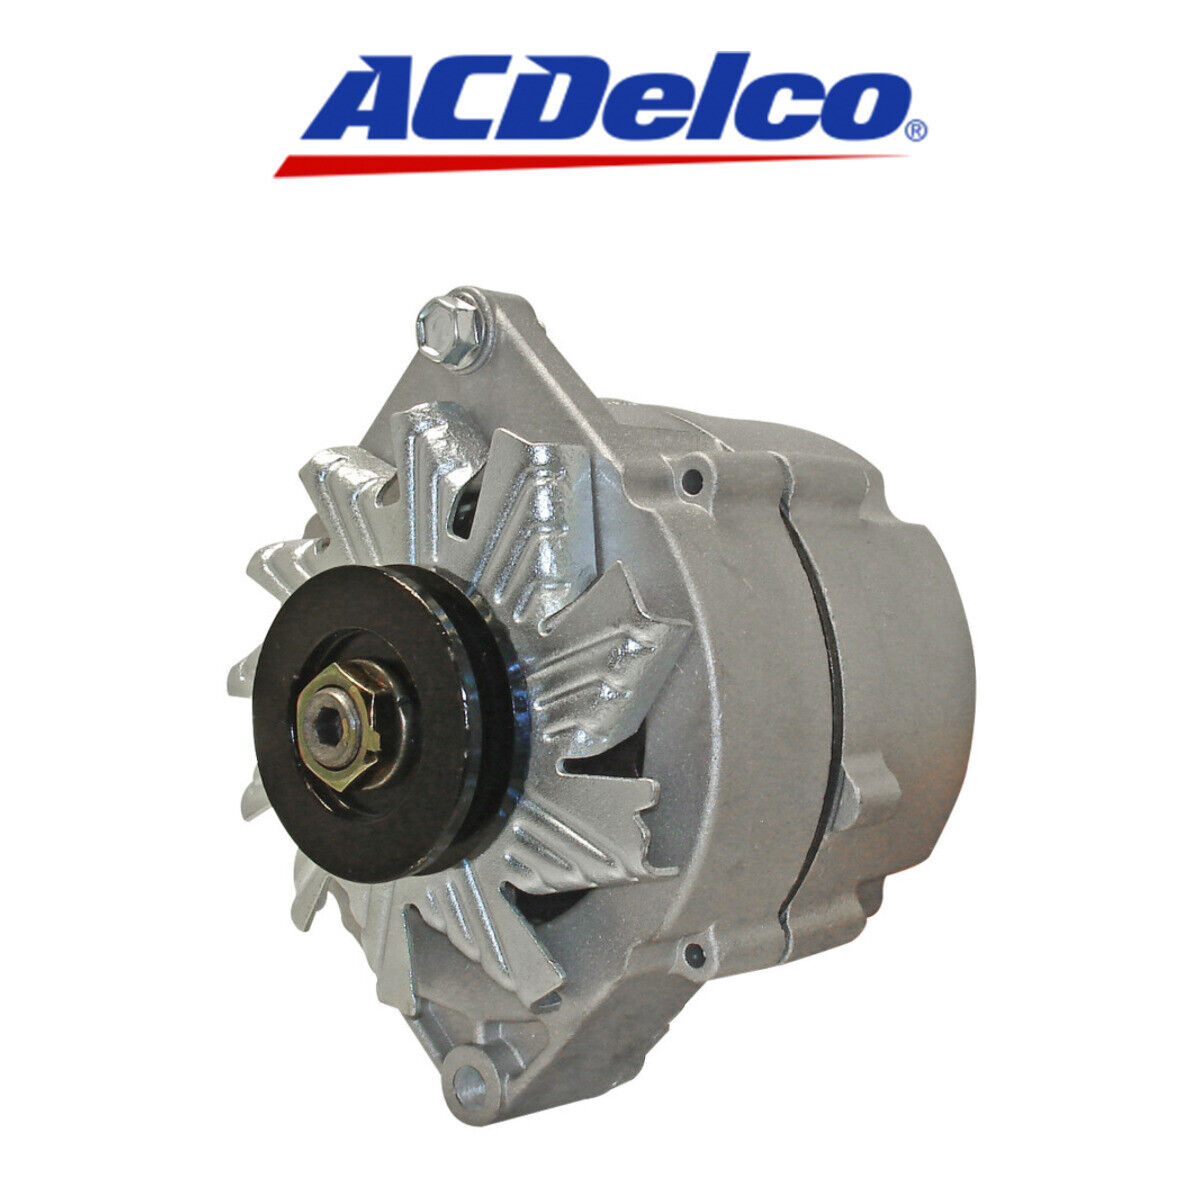 Remanufactured ACDelco Alternator 334-2110 19135668